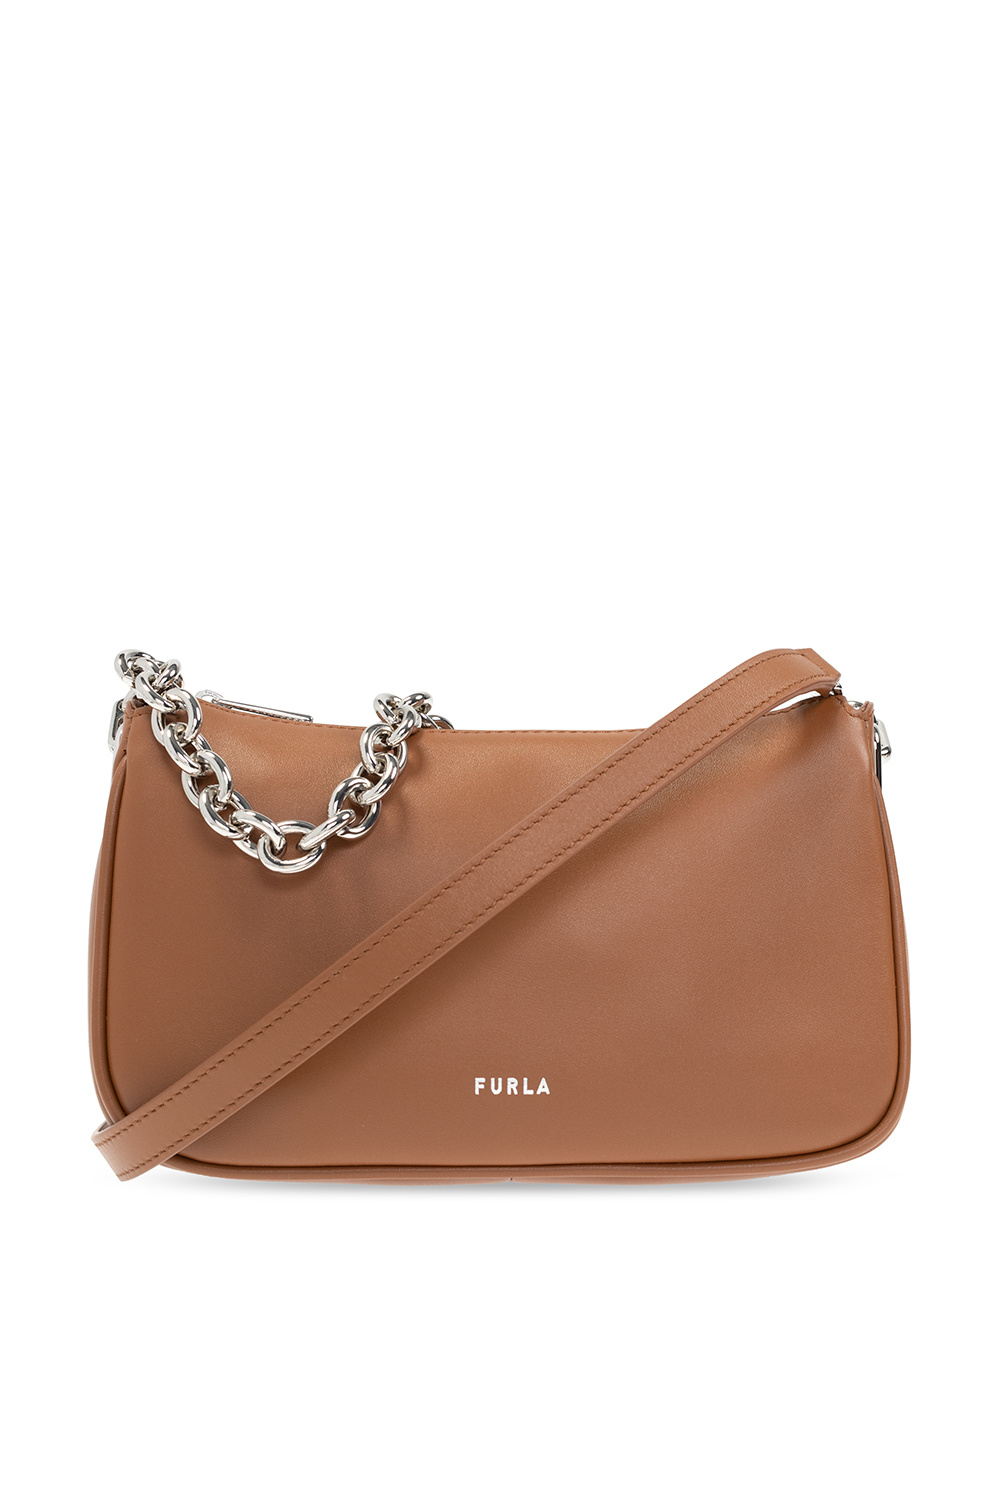 Furla ‘Moon’ shoulder Carhartt bag